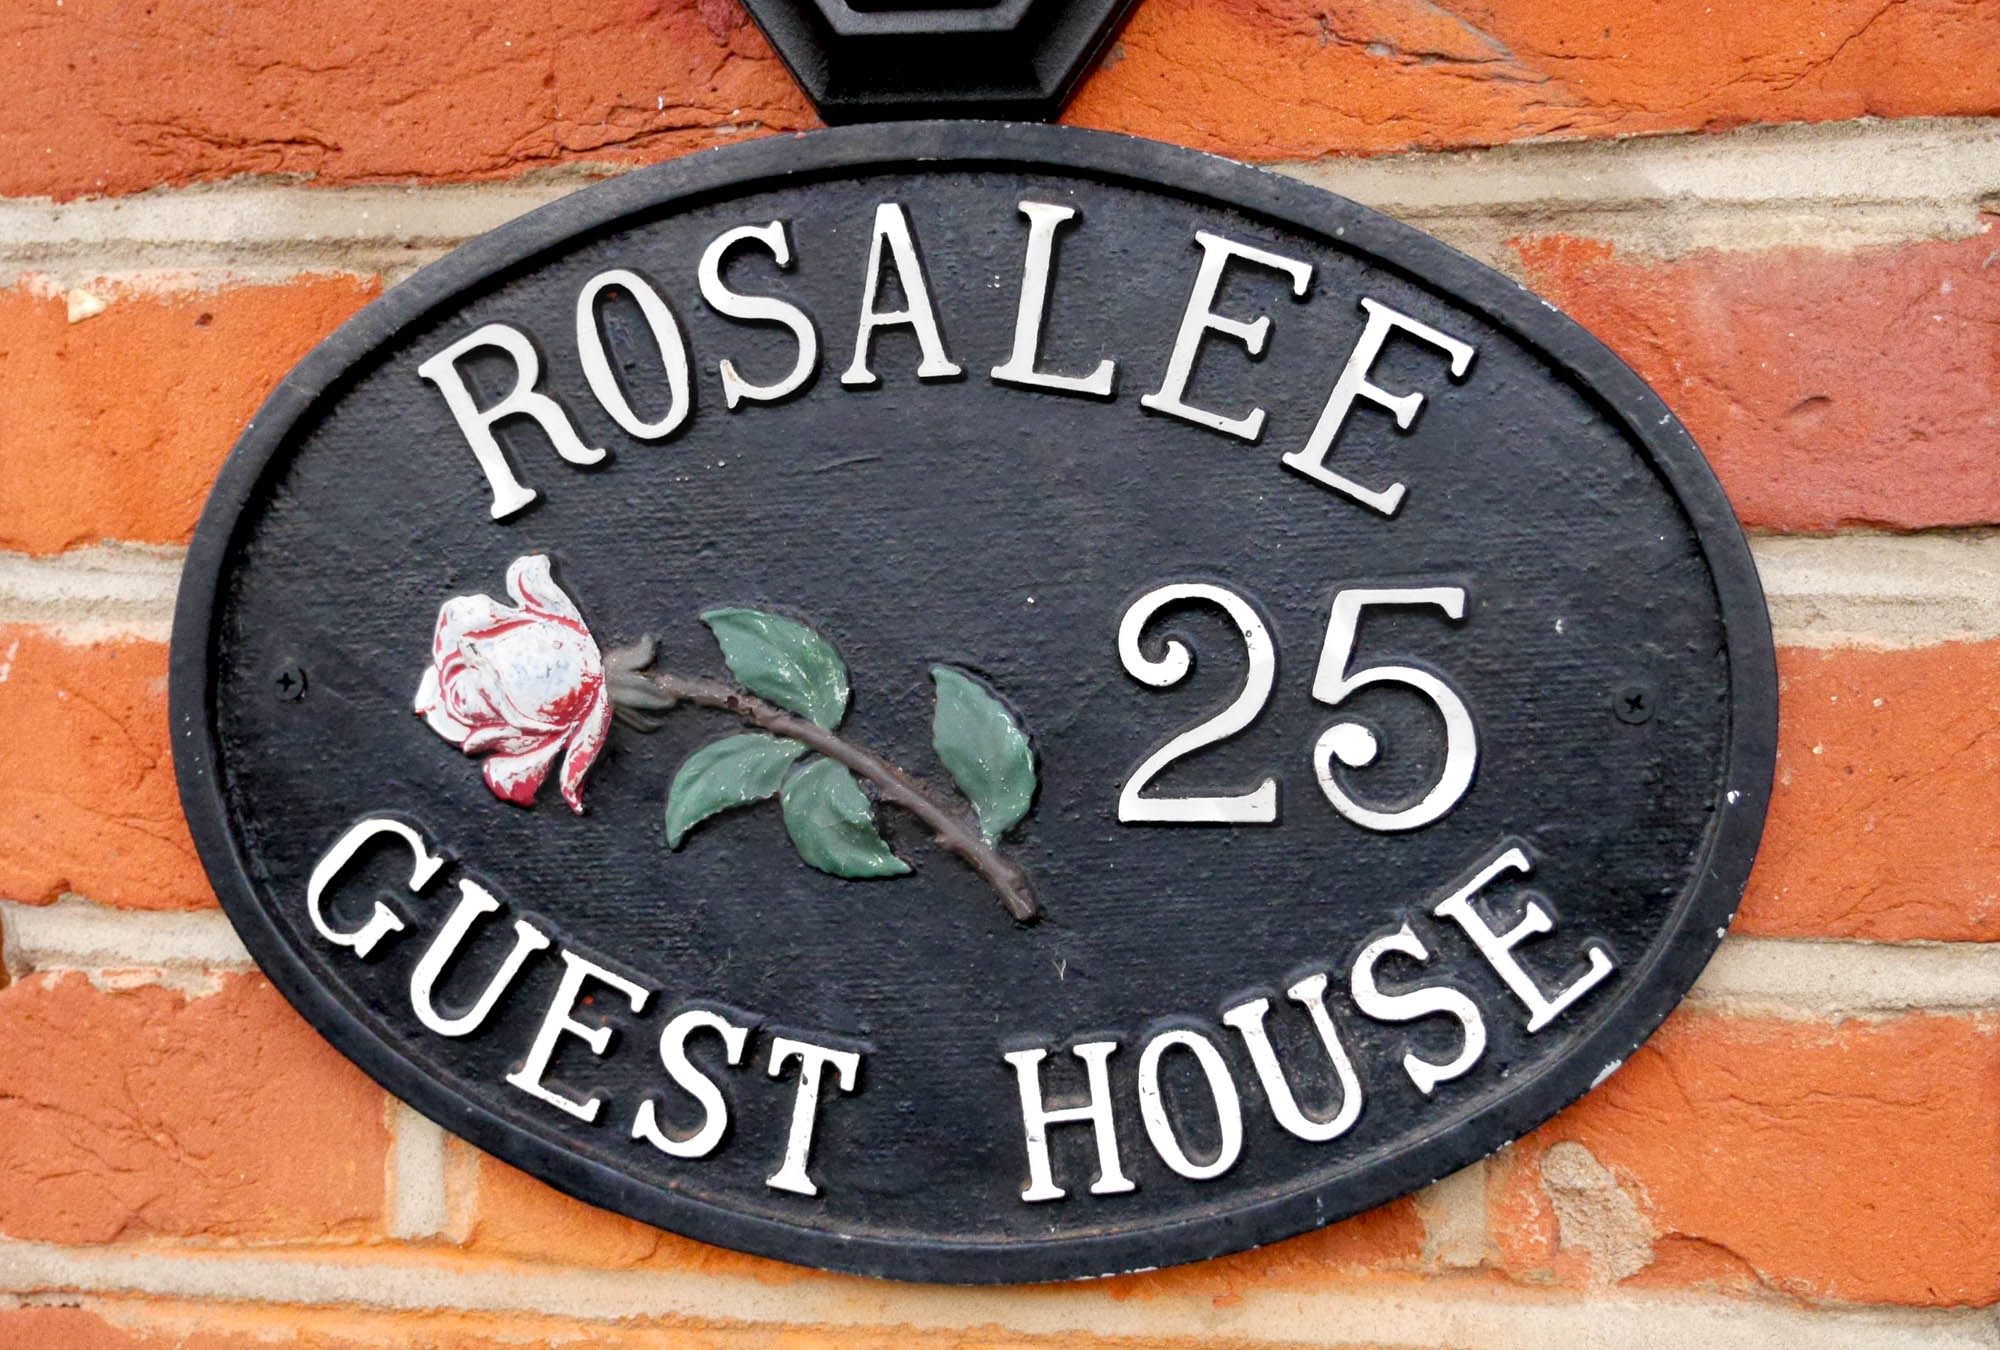 Rosalee - Front - Sign - 01.jpg